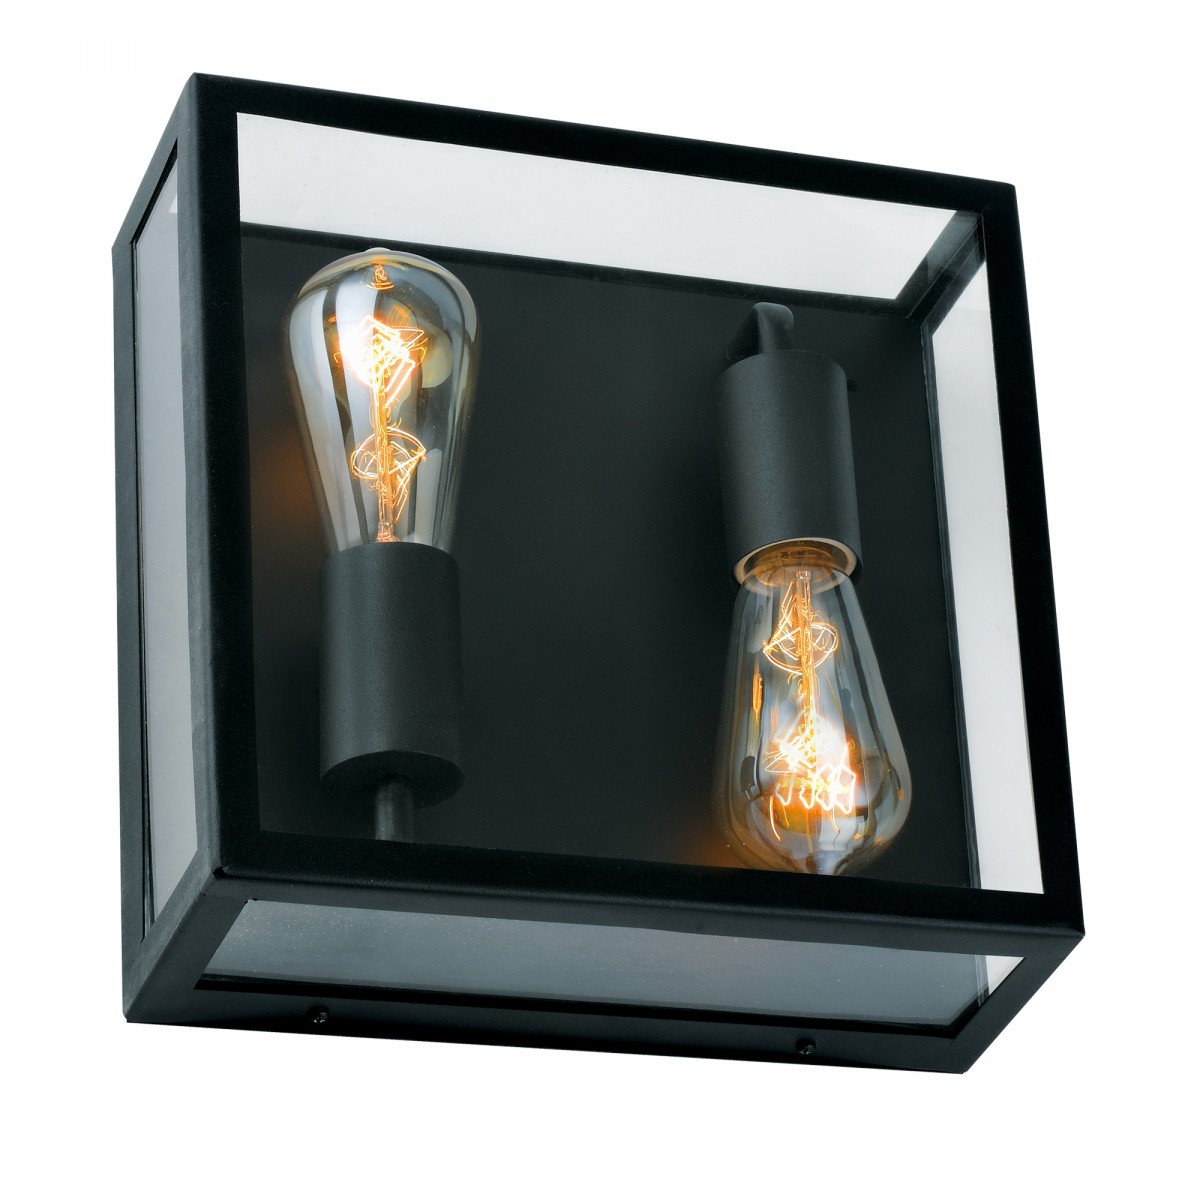 zwarte plafondlamp ook als wandlamp toepasbaar, vierkant zwarte frame, grote heldere glazen, twee zichtbare lichtbronnen, stijlvolle plaffoniere